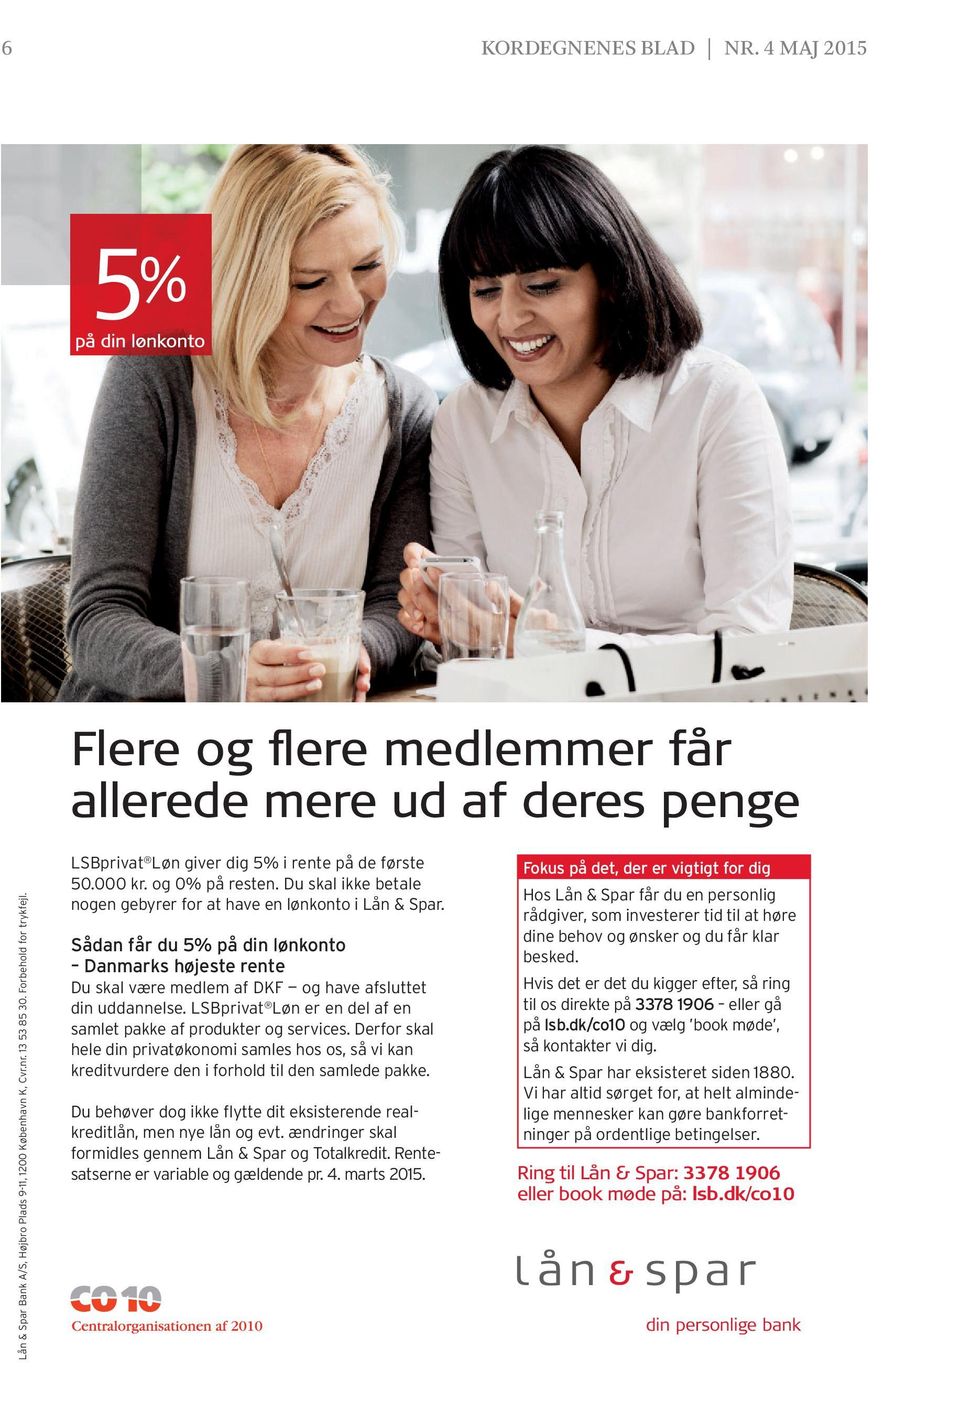 Sådan får du 5% på din lønkonto Danmarks højeste rente Du skal være medlem af DKF og have afsluttet din uddannelse. LSBprivat Løn er en del af en samlet pakke af produkter og services.